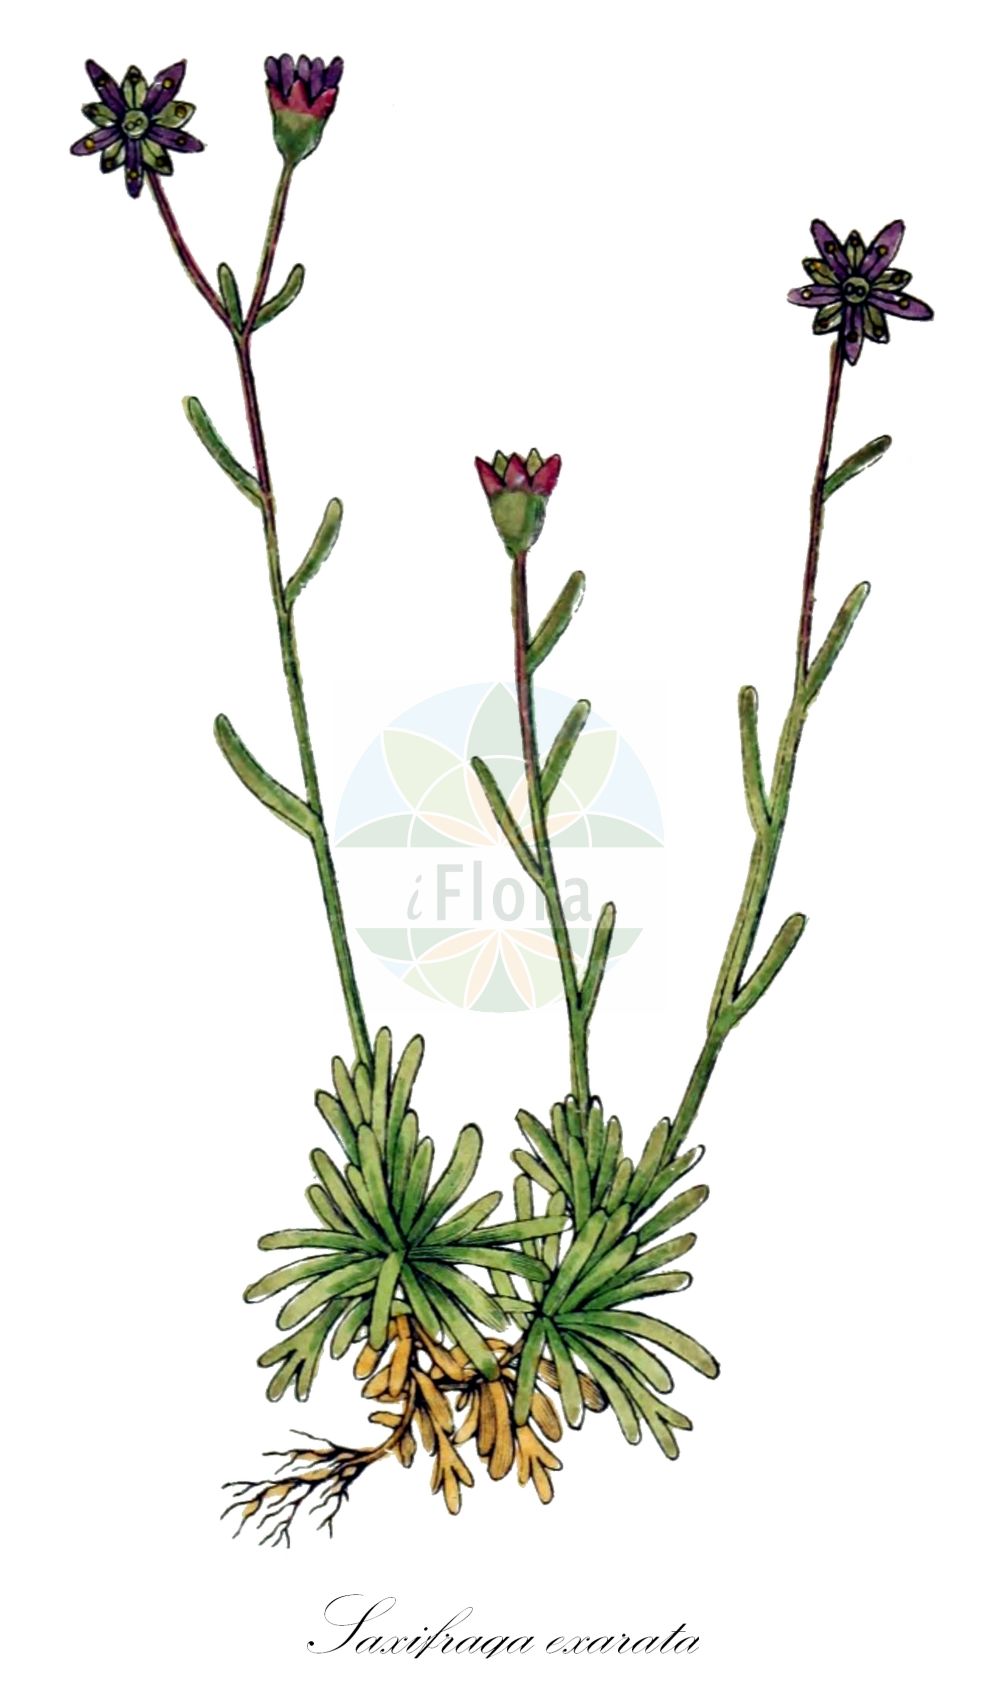 Historische Abbildung von Saxifraga exarata (Furchen-Steinbrech - Furrowed Saxifrage). Das Bild zeigt Blatt, Bluete, Frucht und Same. ---- Historical Drawing of Saxifraga exarata (Furchen-Steinbrech - Furrowed Saxifrage). The image is showing leaf, flower, fruit and seed.(Saxifraga exarata,Furchen-Steinbrech,Furrowed Saxifrage,Saxifraga adenophora,Saxifraga exarata,Saxifraga muscoides,Saxifraga tenuifolia,Saxifraga varians,Furchen-Steinbrech,Flachblatt-Steinbrech,Furrowed Saxifrage,Saxifraga,Steinbrech,Saxifrage,Saxifragaceae,Steinbrechgewächse,Saxifrage family,Blatt,Bluete,Frucht,Same,leaf,flower,fruit,seed,Sturm (1796f))